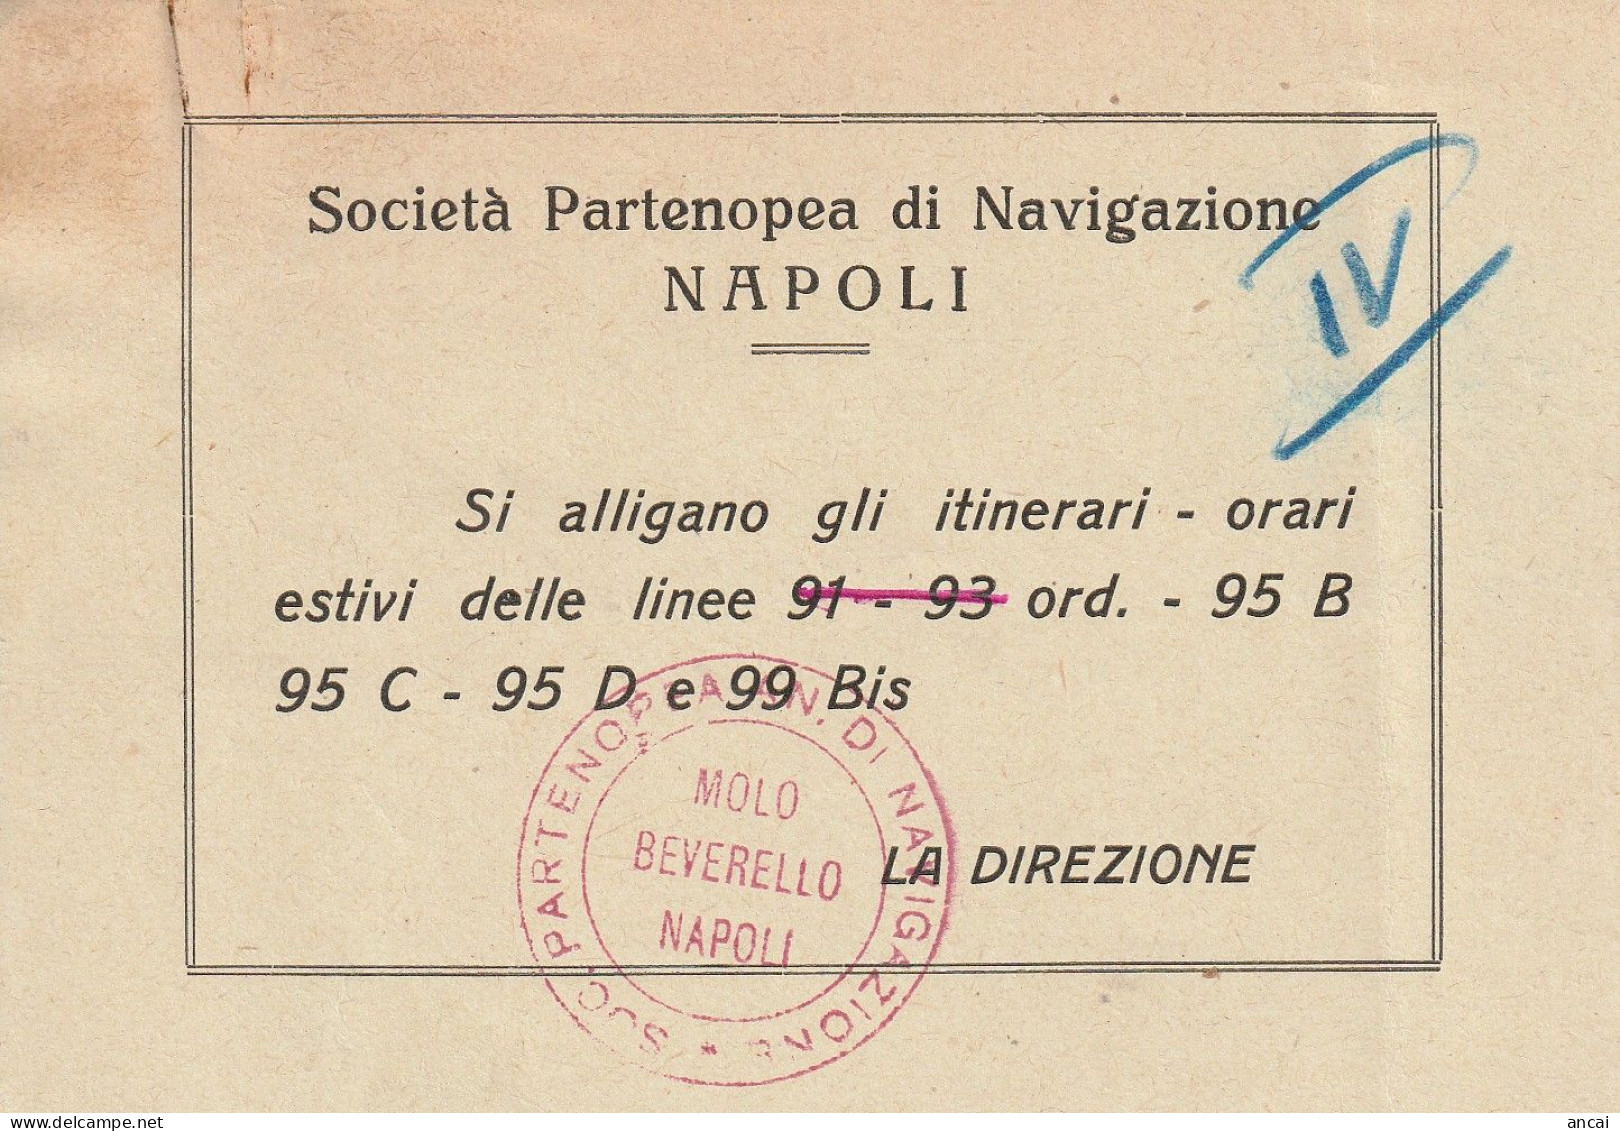 Napoli. SOCIETA' PARTENOPEA DI NAVIGAZIONE (S.P.A.N.). Orario Estivo 1953. INTERESSANTE DOCUMENTO. MOLTO RARO. - Europa